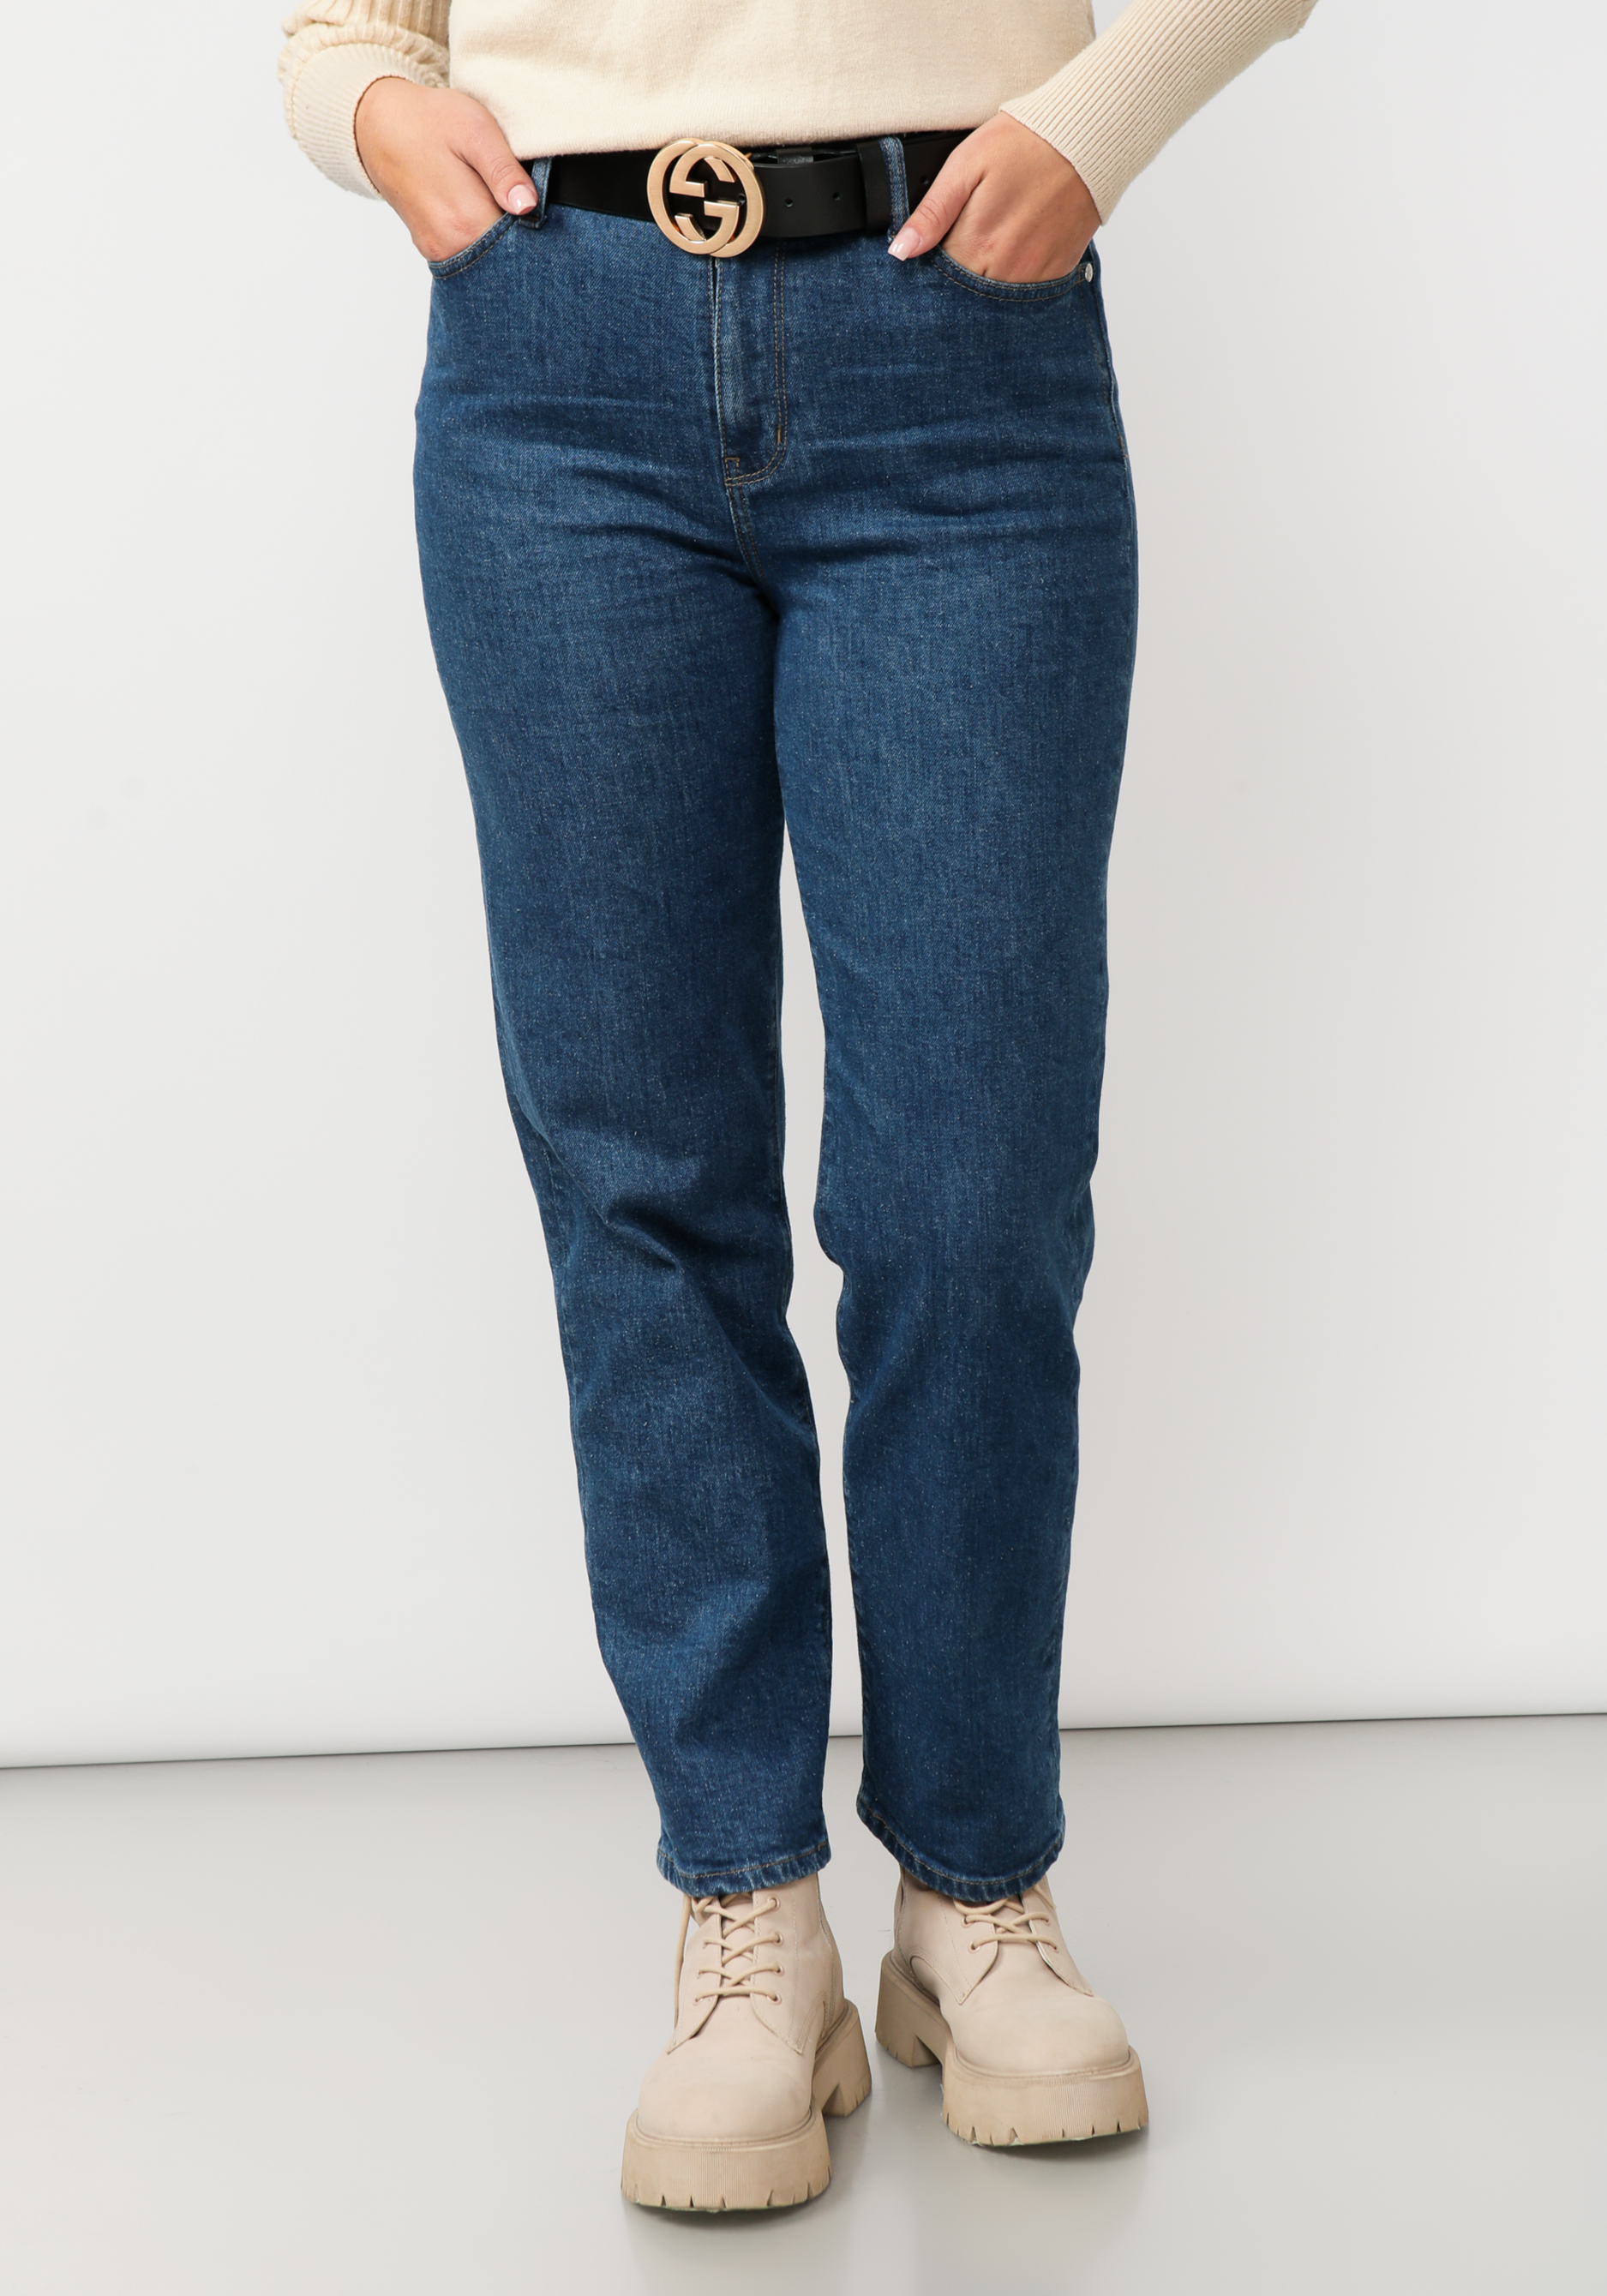 Джинсы прямого кроя с вышивкой на кармане джинсы прямого кроя с вышивкой на кармане